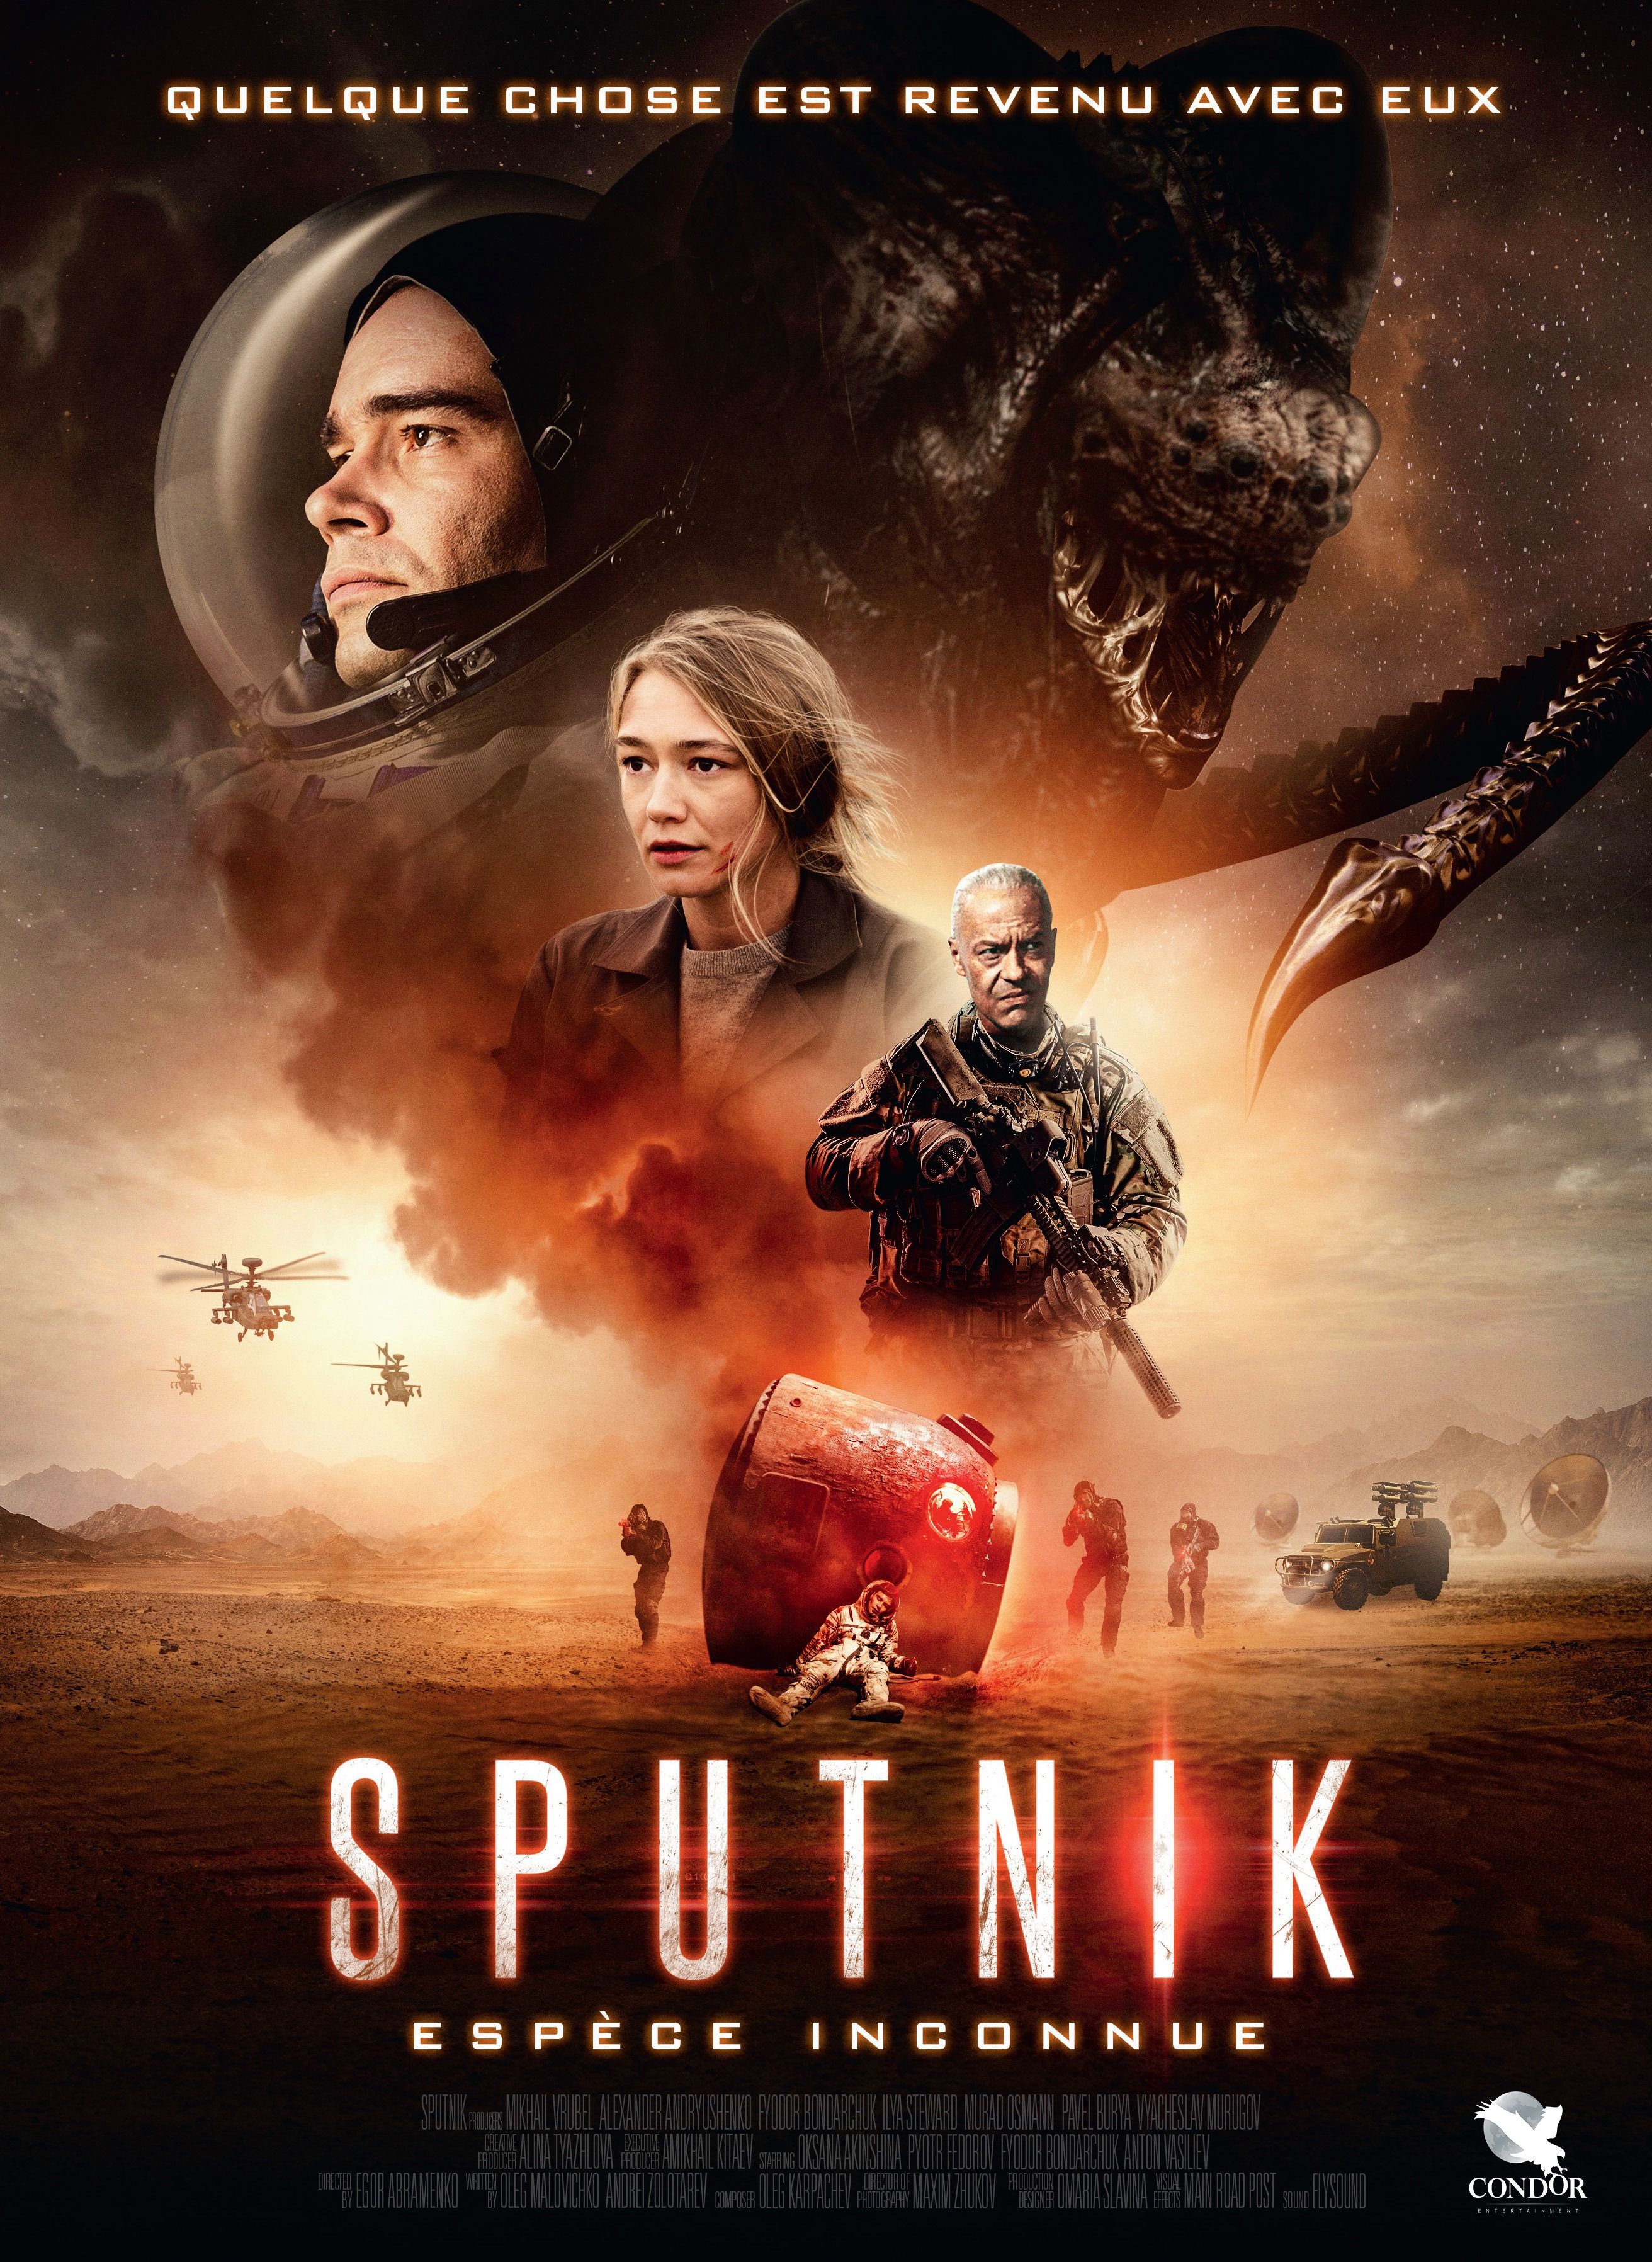 [CRITIQUE] Sputnik - Un “Alien like” plus dramatique que monstrueux - C